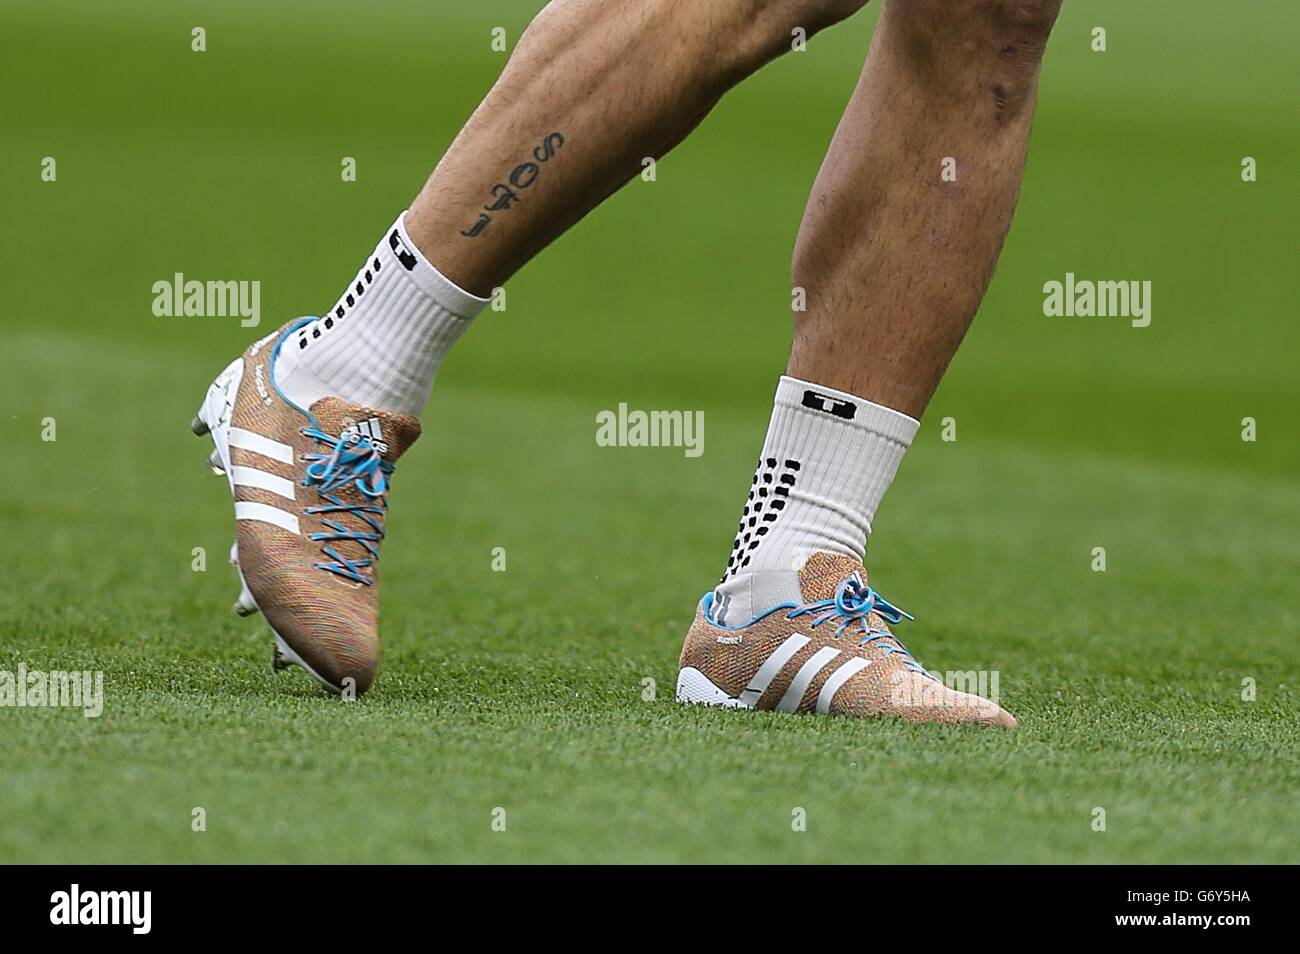 falta Ver insectos Precaución Luis Suarez de Liverpool lleva las nuevas botas Adidas Samba Primeknit  Fotografía de stock - Alamy